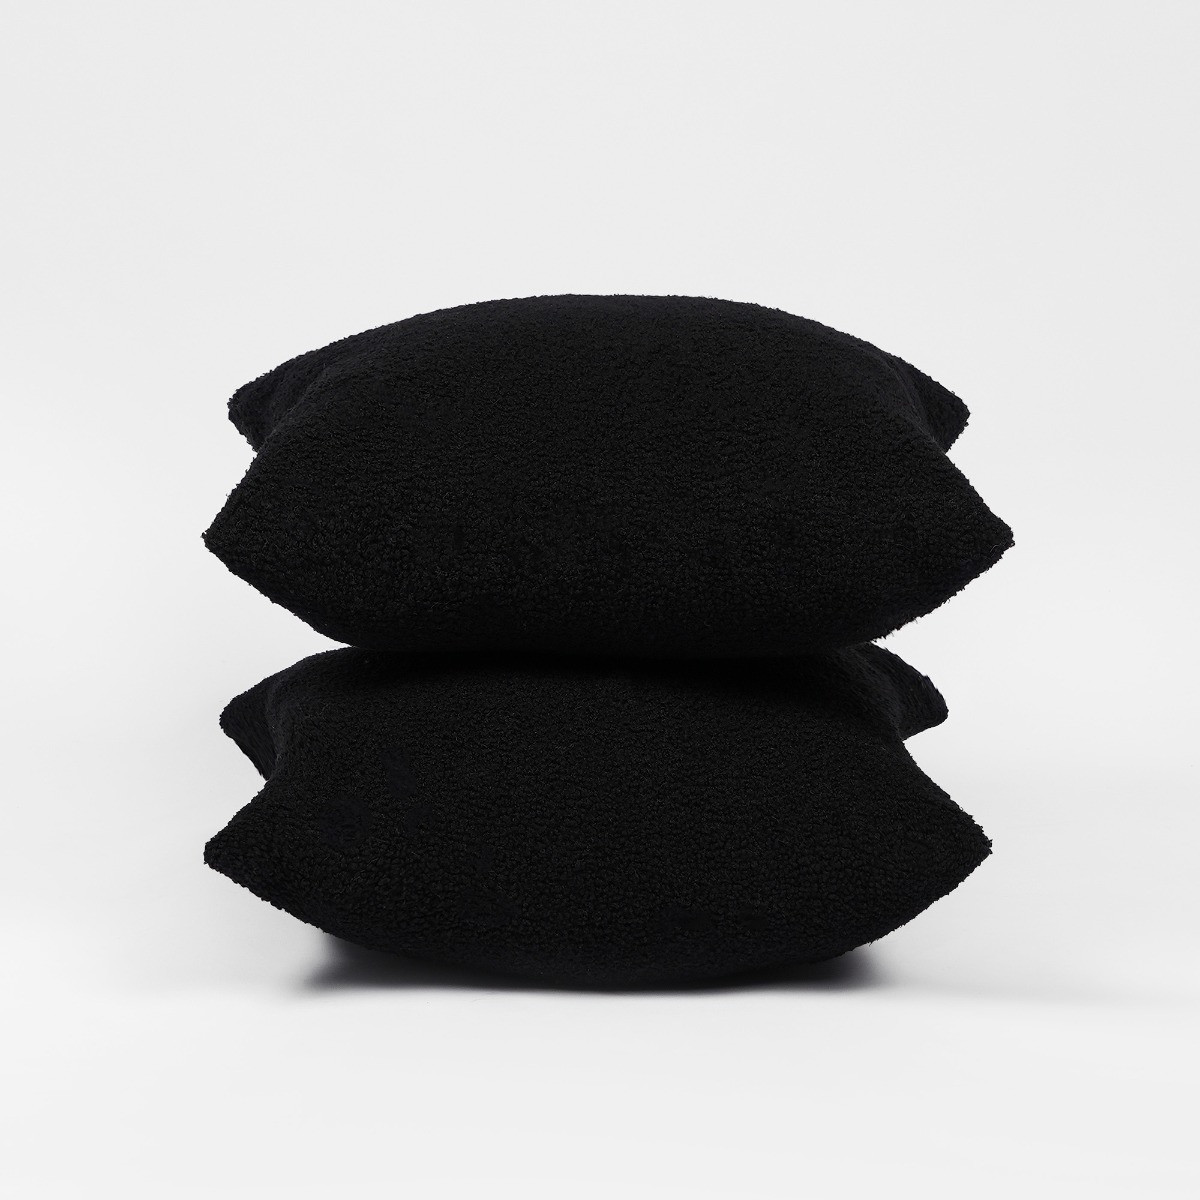 Highams Teddy Bouclé Cushion Covers - Black>